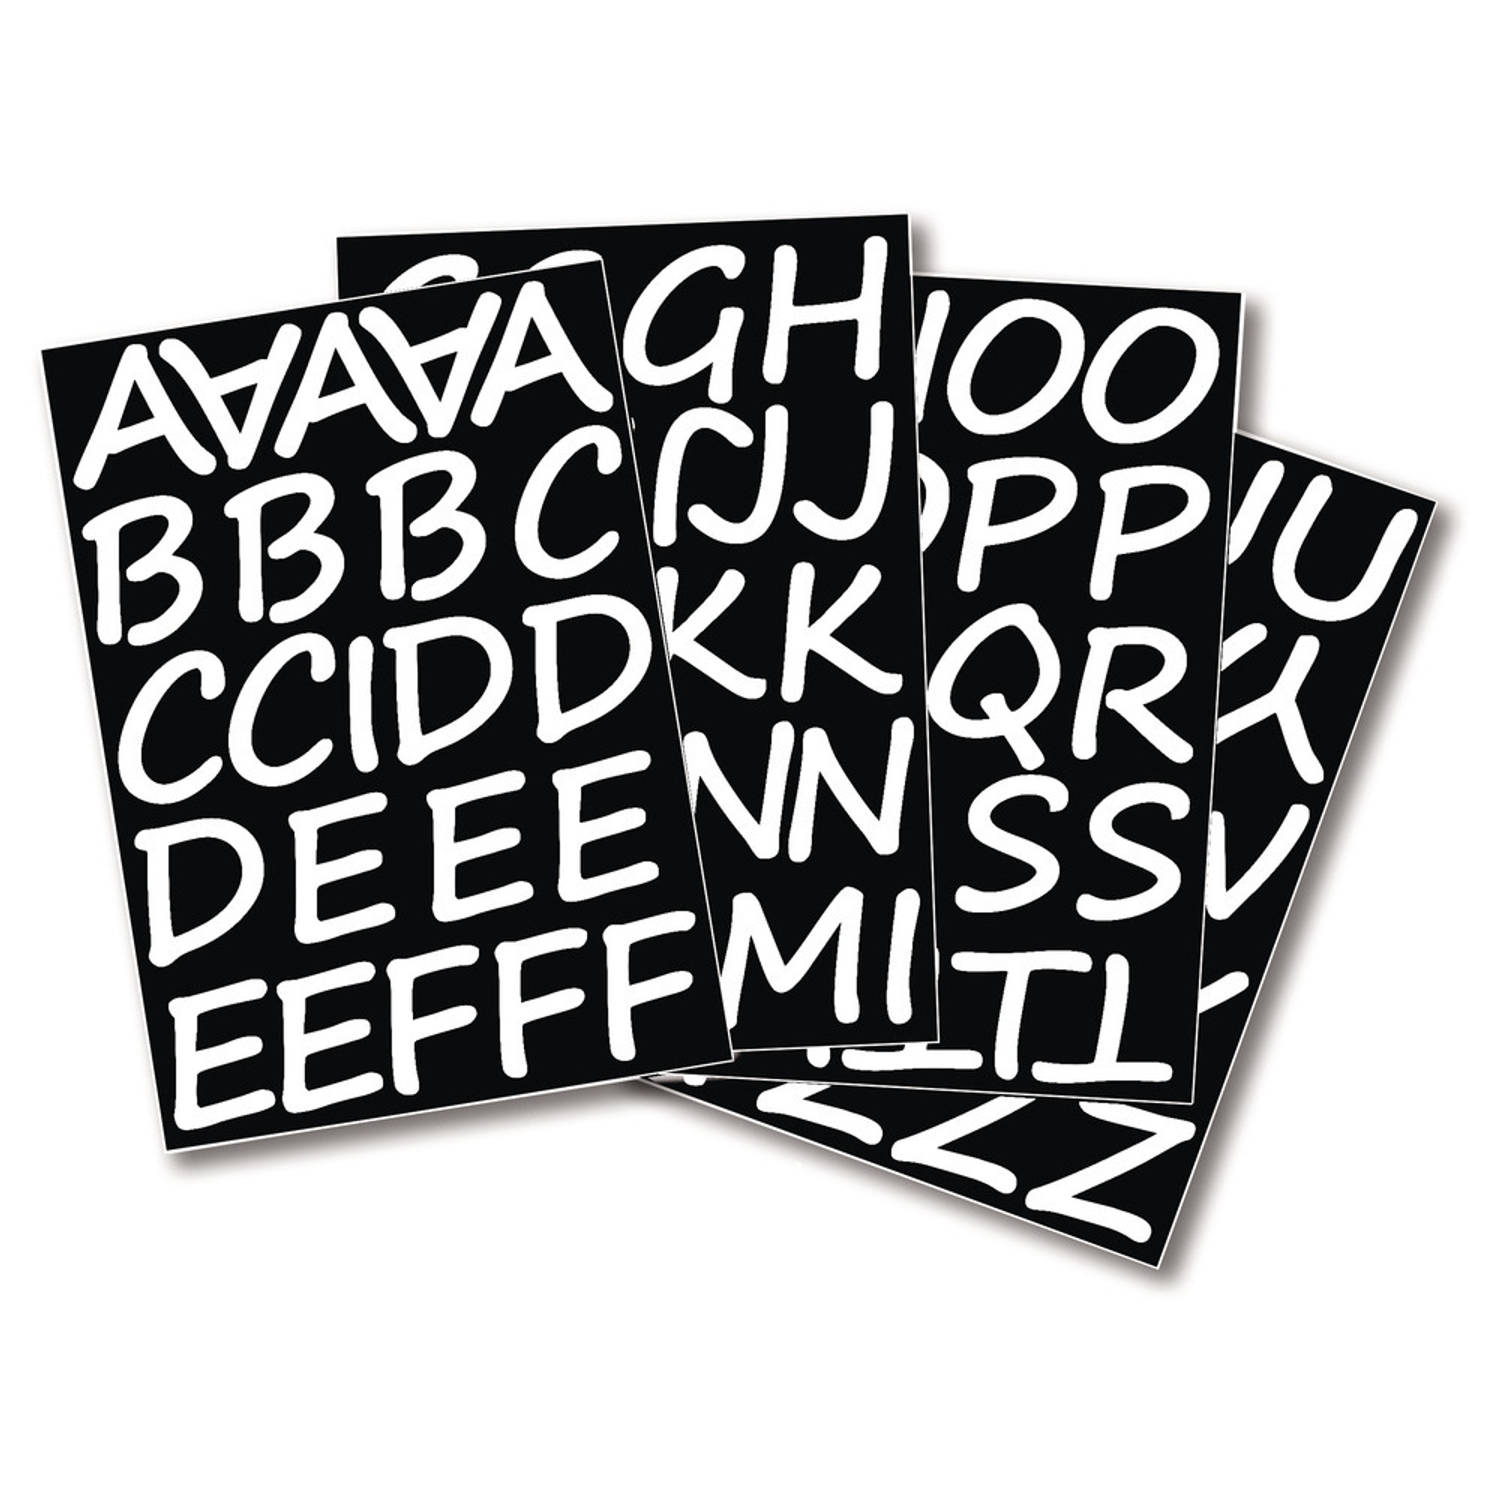 hoe reactie vertrouwen 1x Setje alfabet plakletter stickers ongeveer 5 cm - Stickers | Blokker